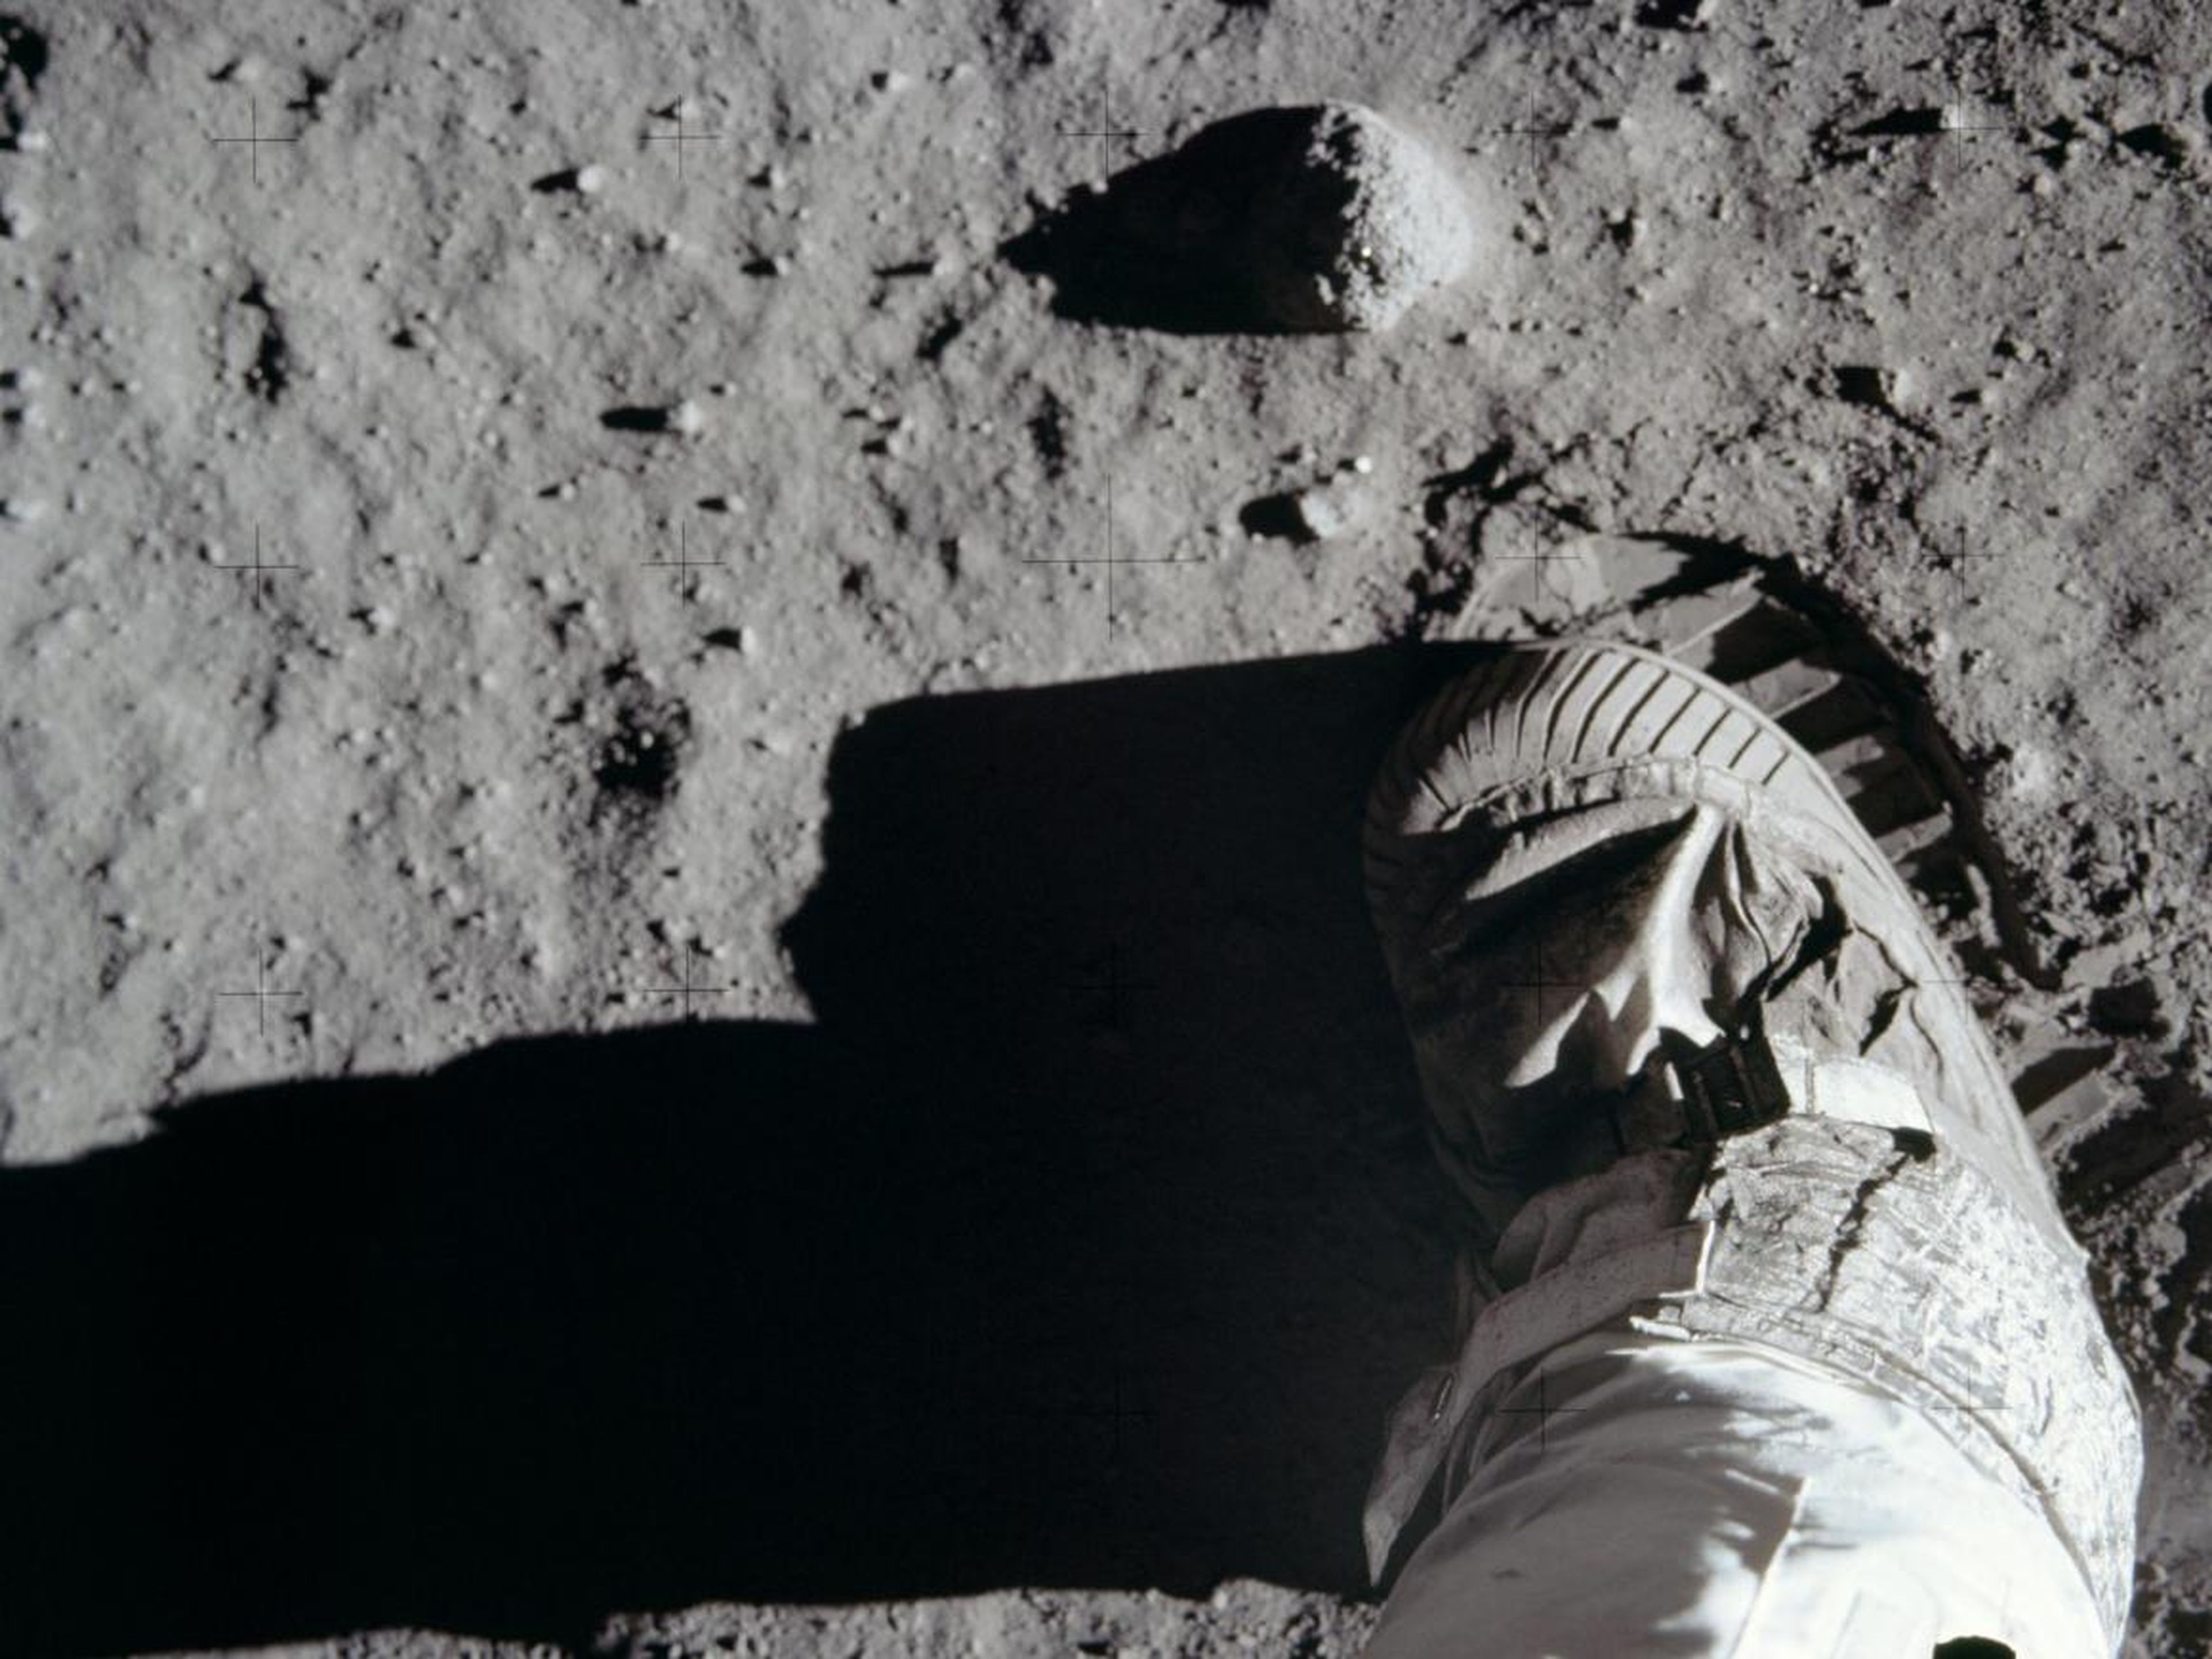 Los astronautas Neil Armstrong y Buzz Aldrin aterrizaron en la superficie lunar el 20 de julio de 1969.